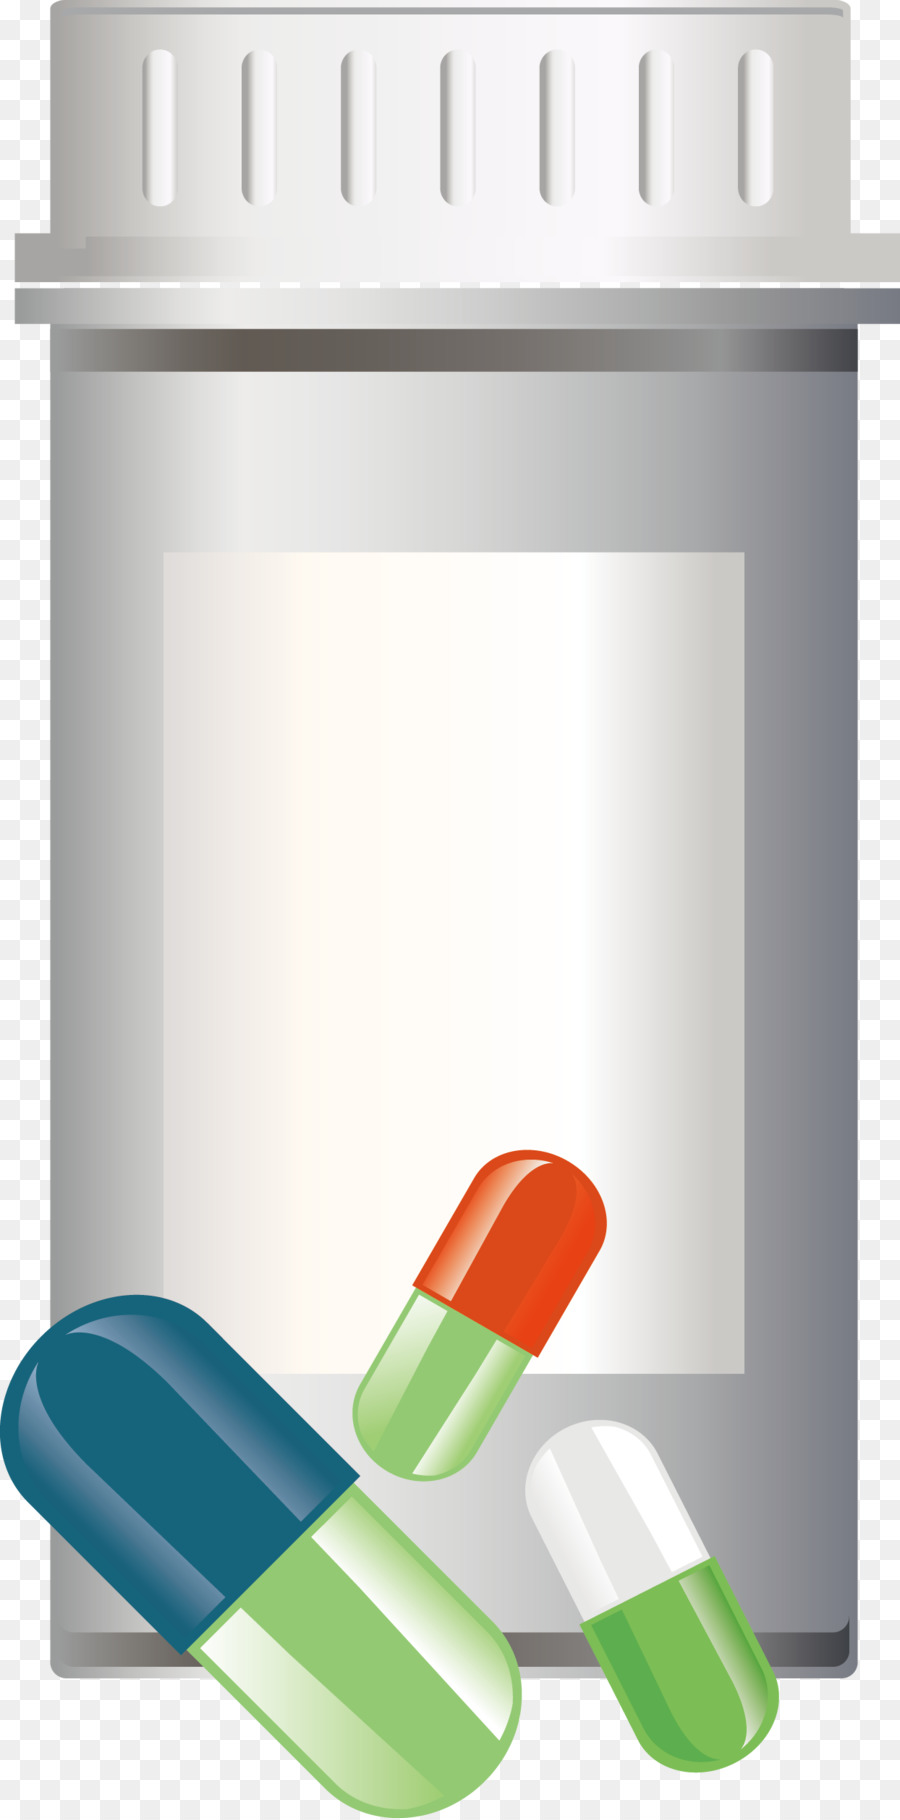 Pharmazeutische Drogen, grobe Droge - Apotheke Pillen Wissenschaft und Technologie-Elemente